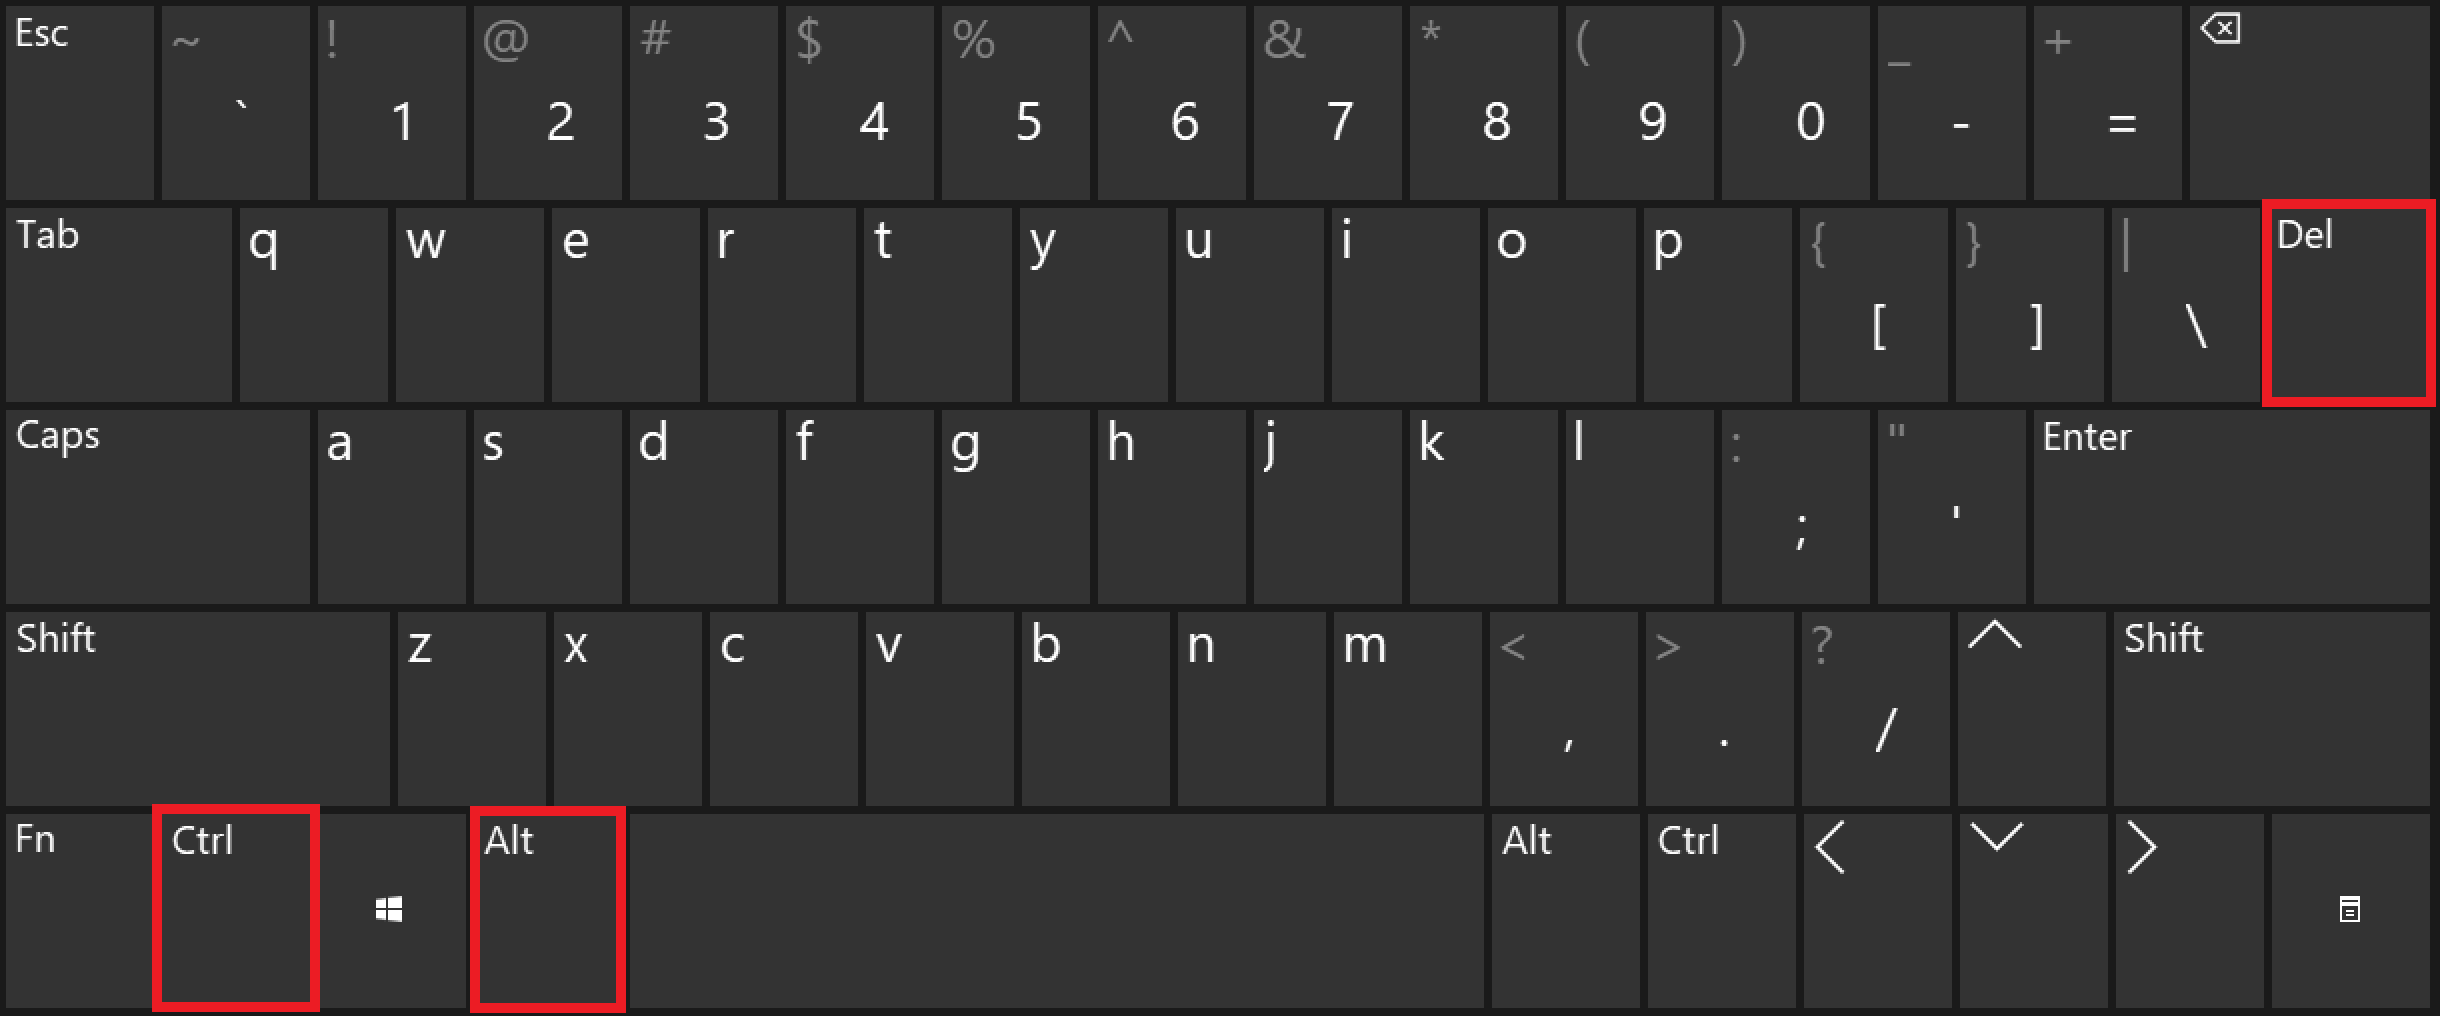 The shortcut Ctrl + Alt + Del on a Windows keyboard